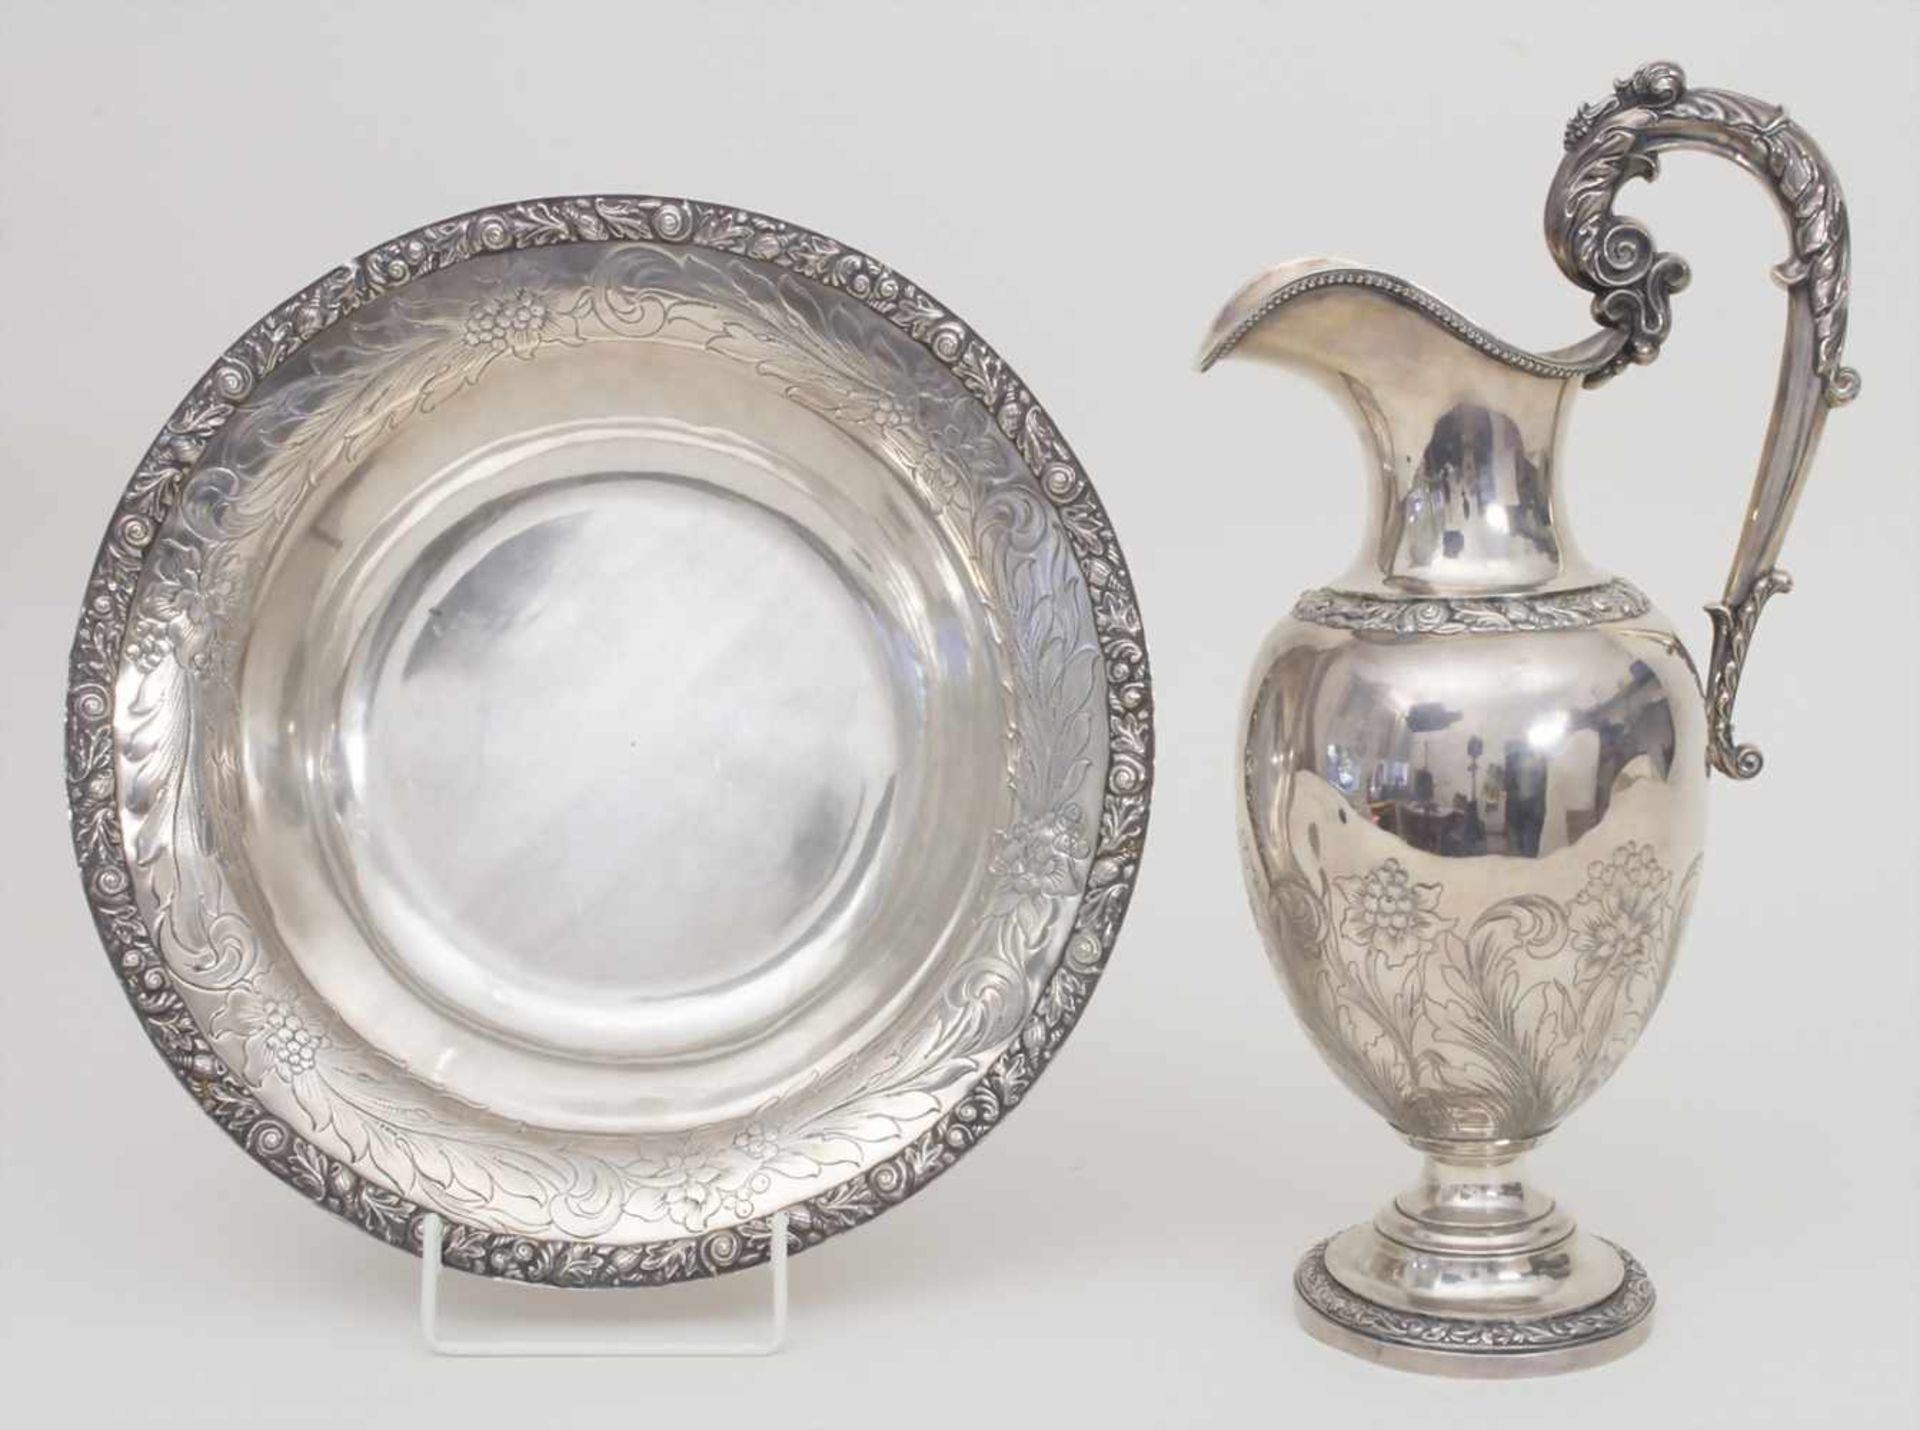 Große Waschschüssel mit Wasserkrug / A large silver wash bowl with ewer, L. Dupre, Paris, 1819-